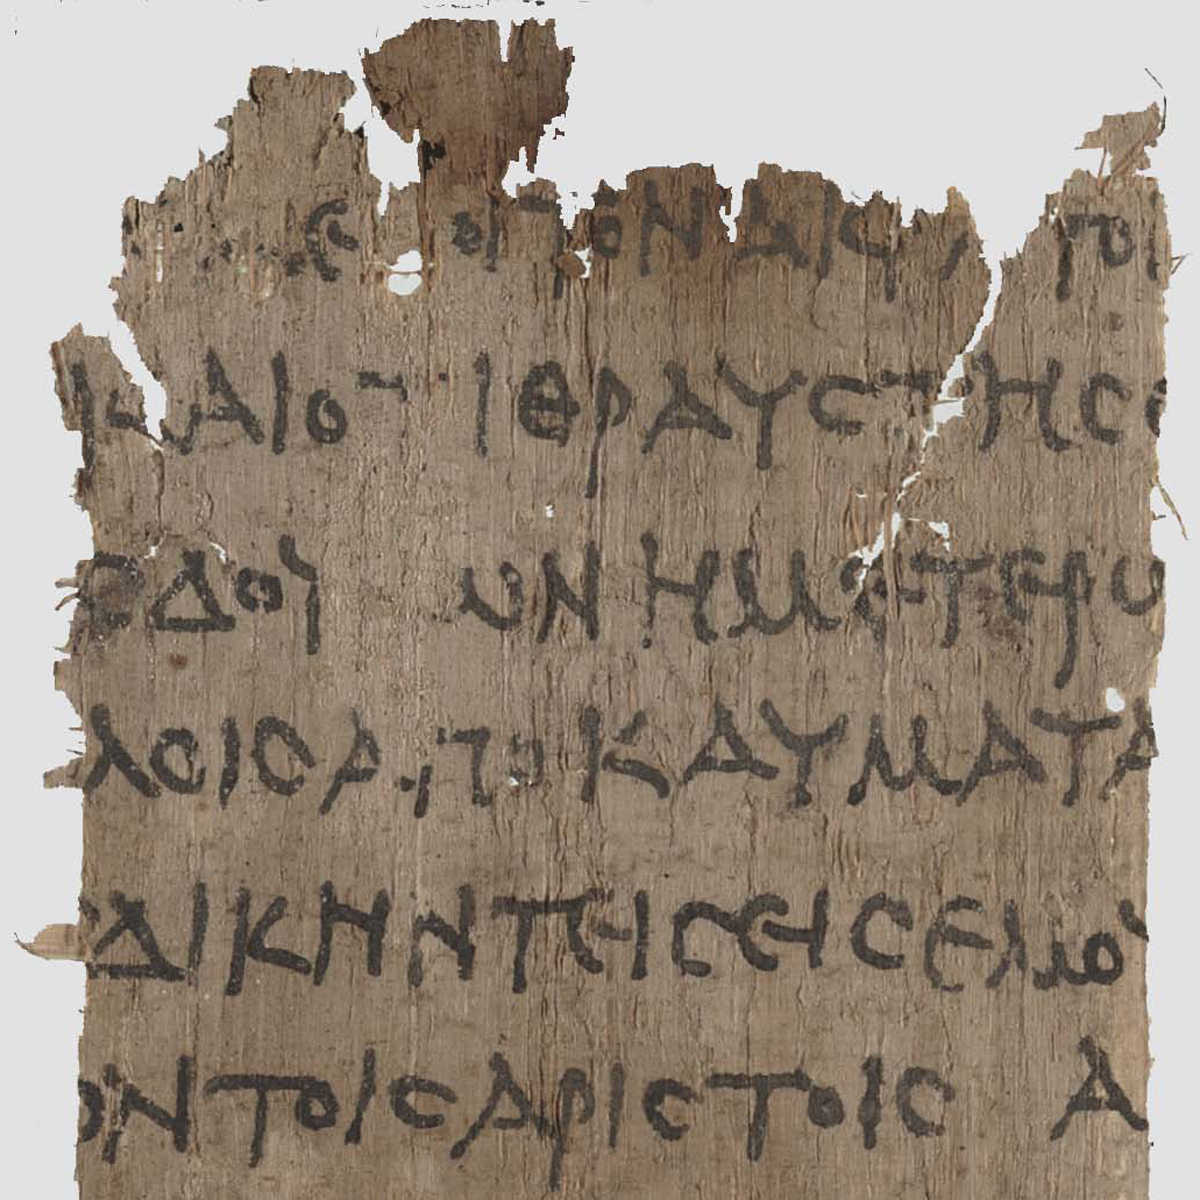 Robert C. Horn Papyri Collection